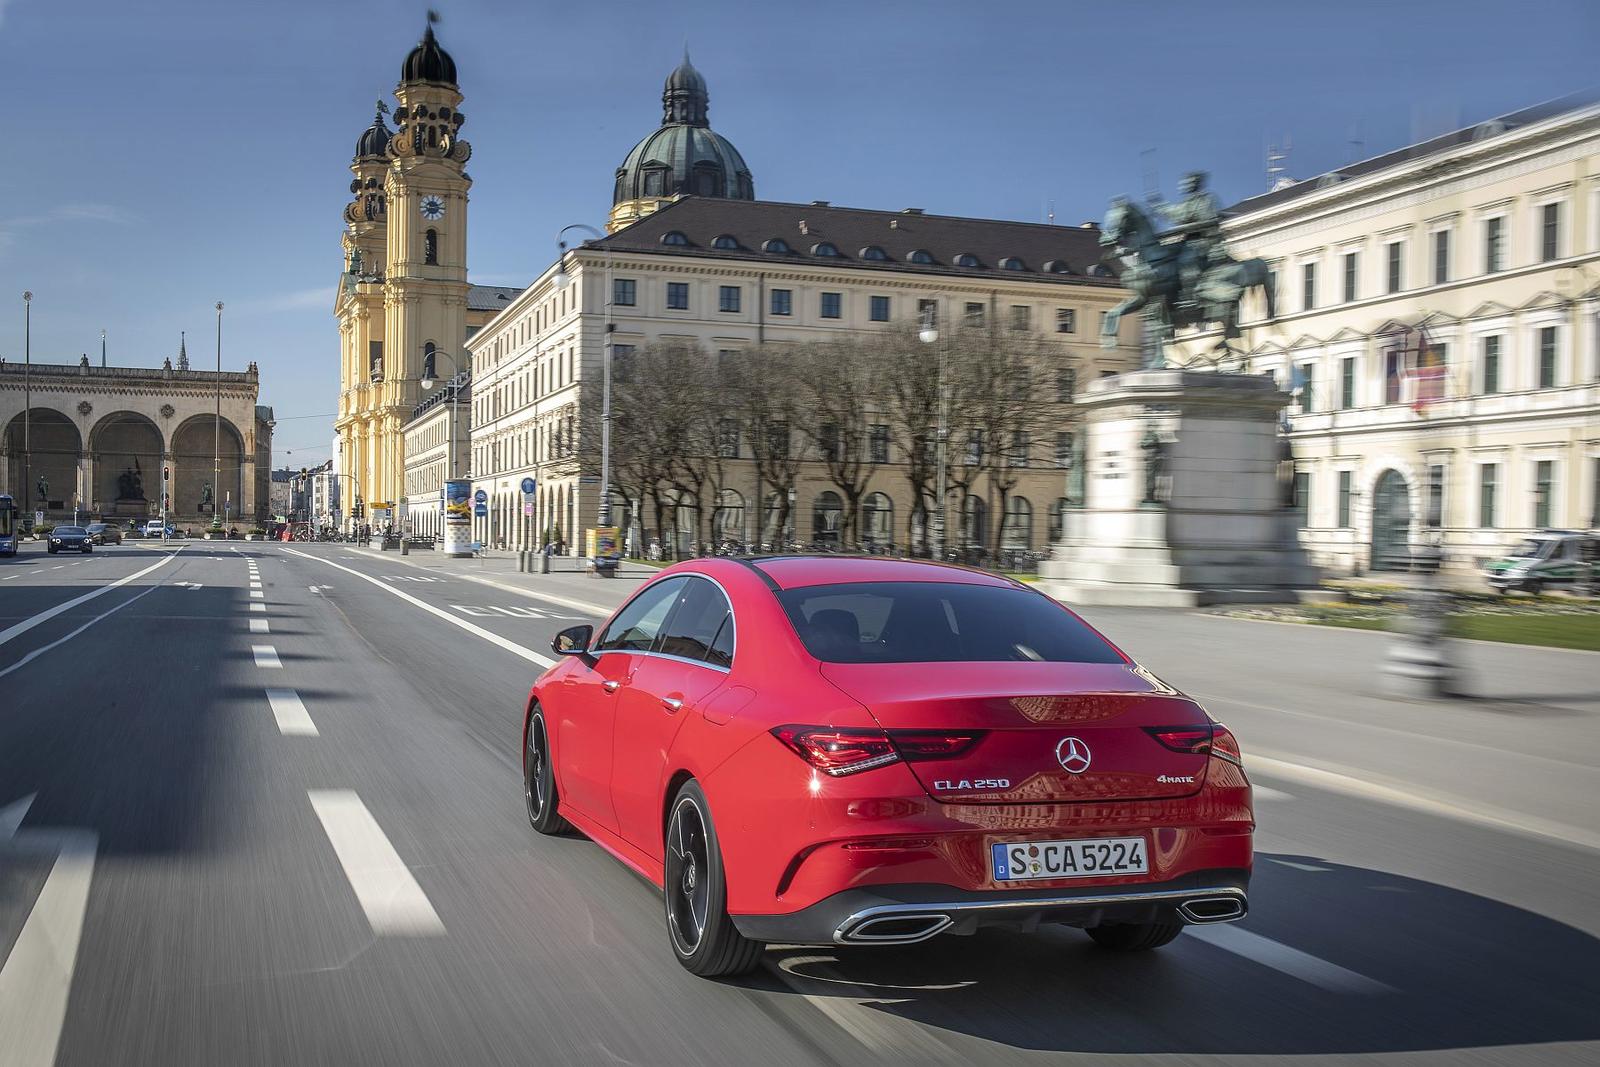 Der neue Mercedes-Benz CLA Coupé, München 2019

The new Mercedes-Benz CLA Coupe, Munich 2019